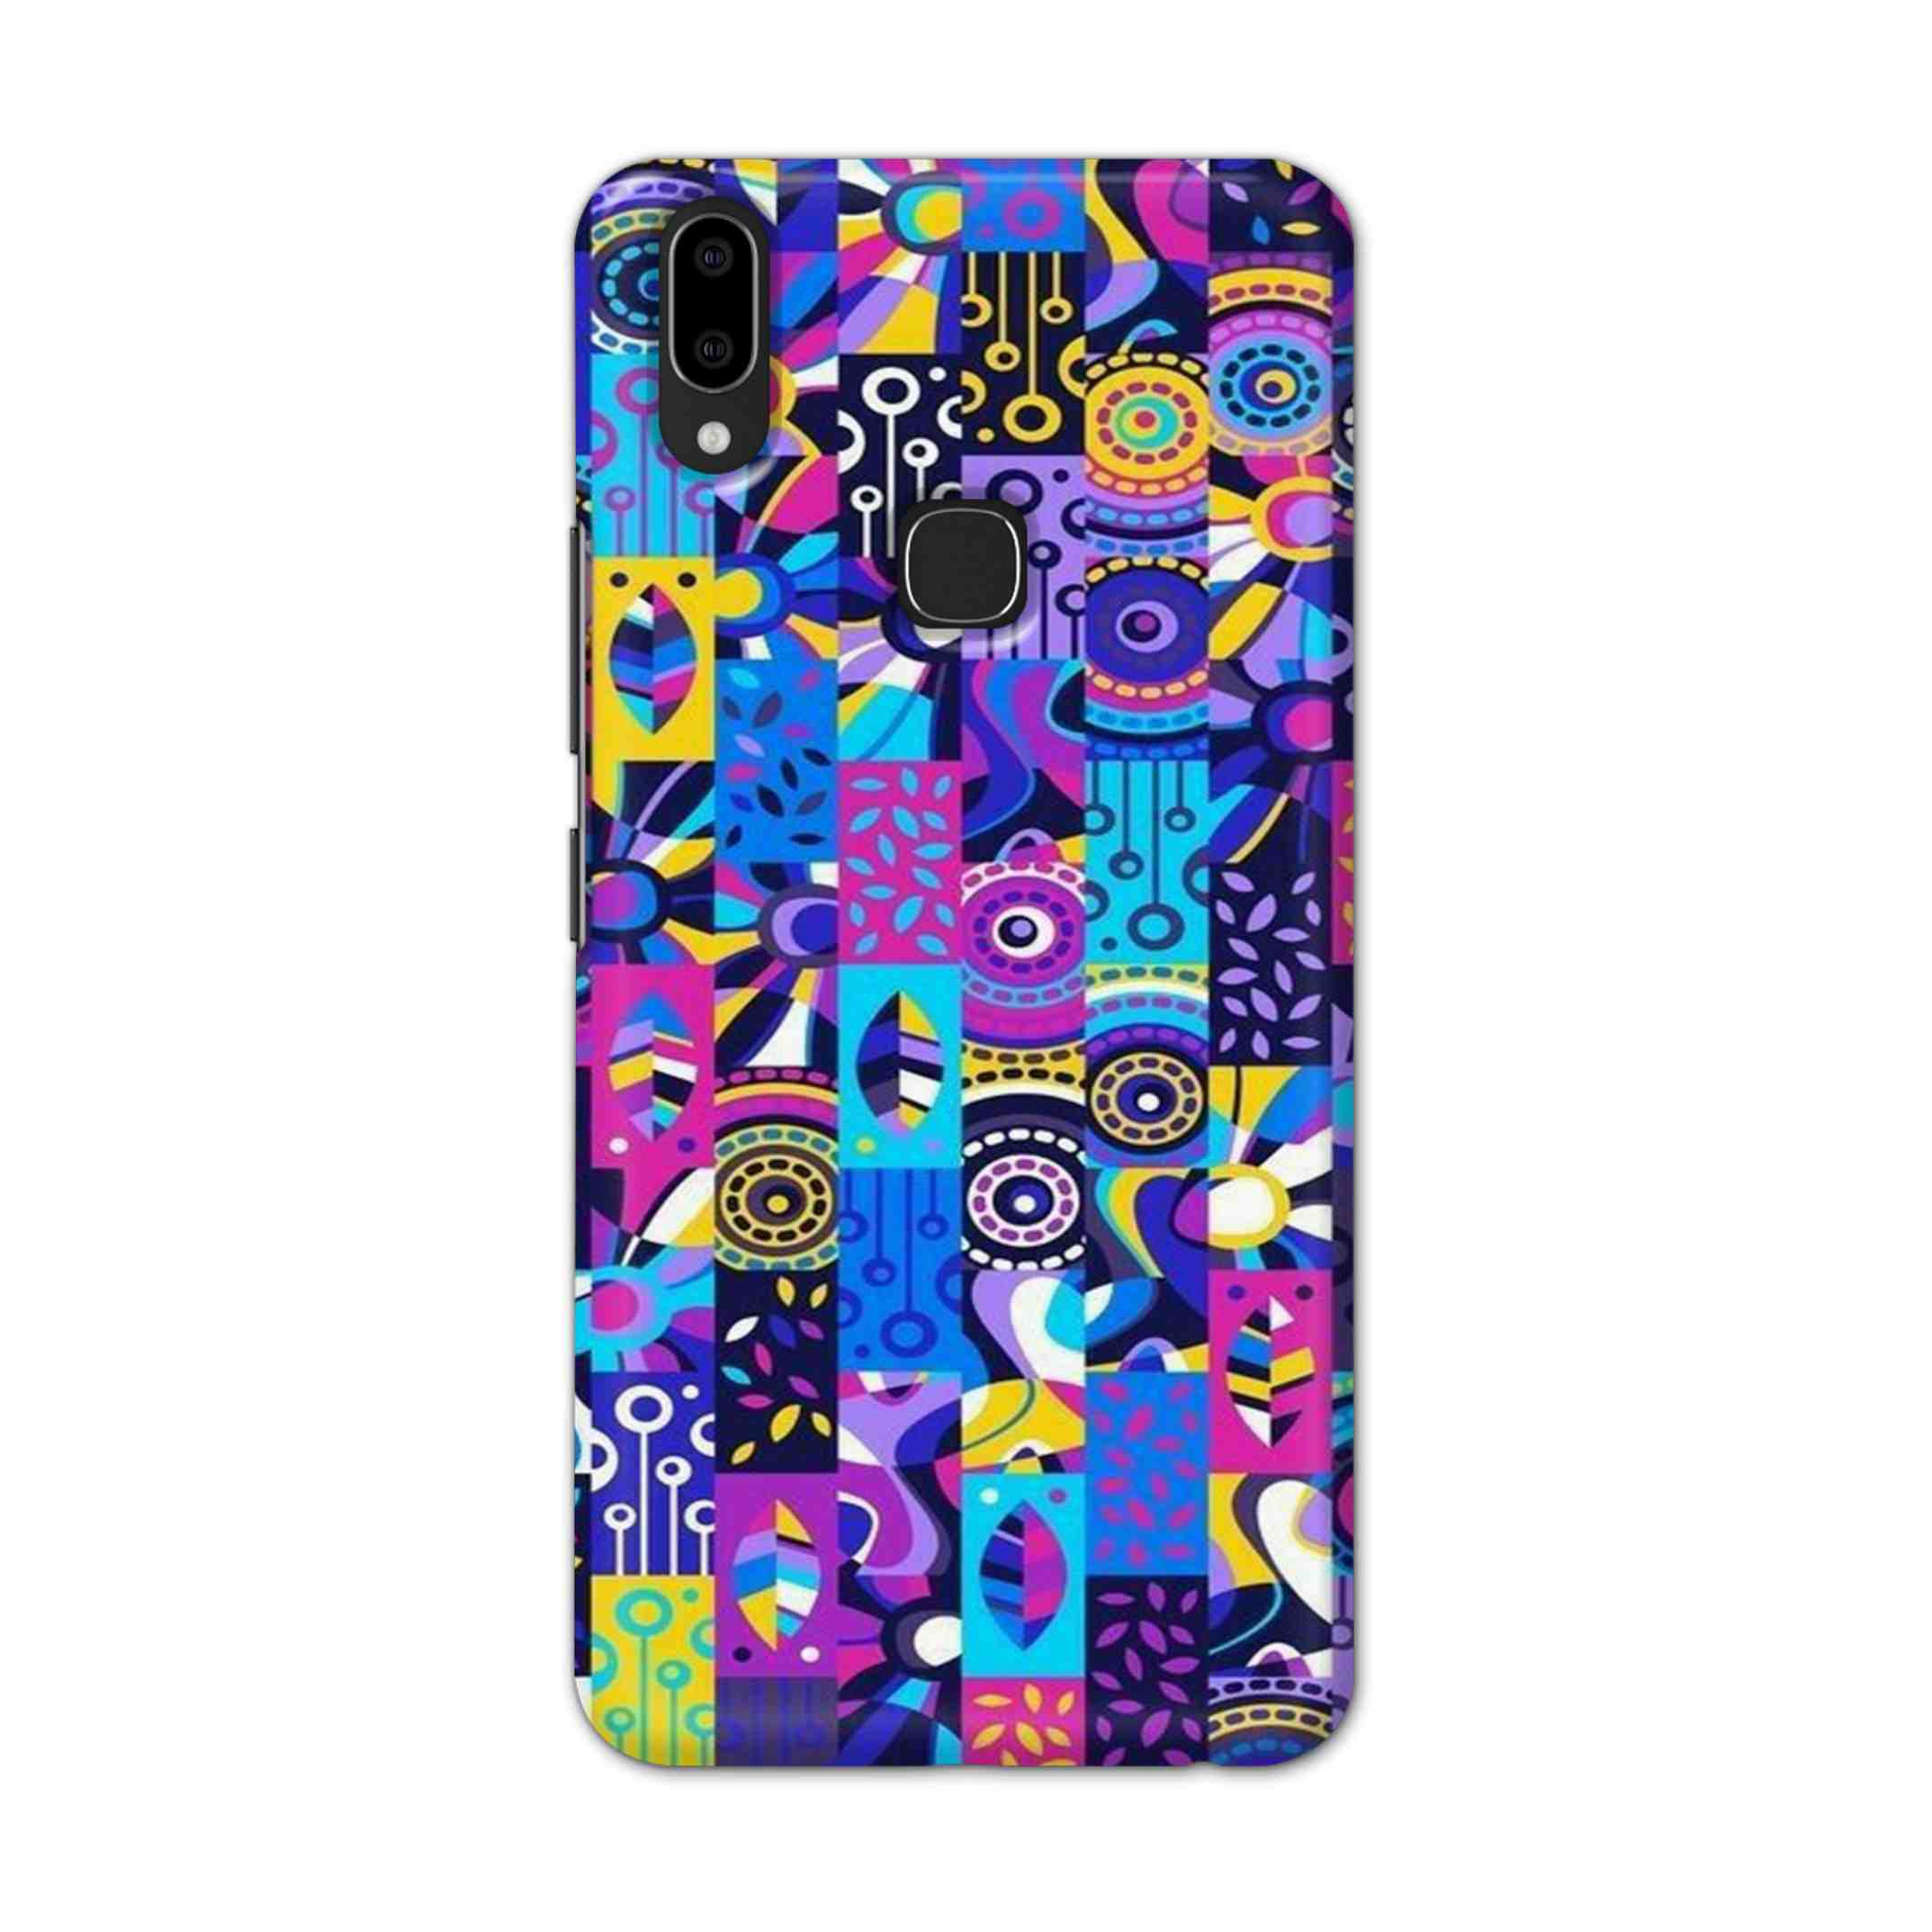 Buy Rainbow Art Hard Back Mobile Phone Case Cover For Vivo V9 / V9 Youth Online